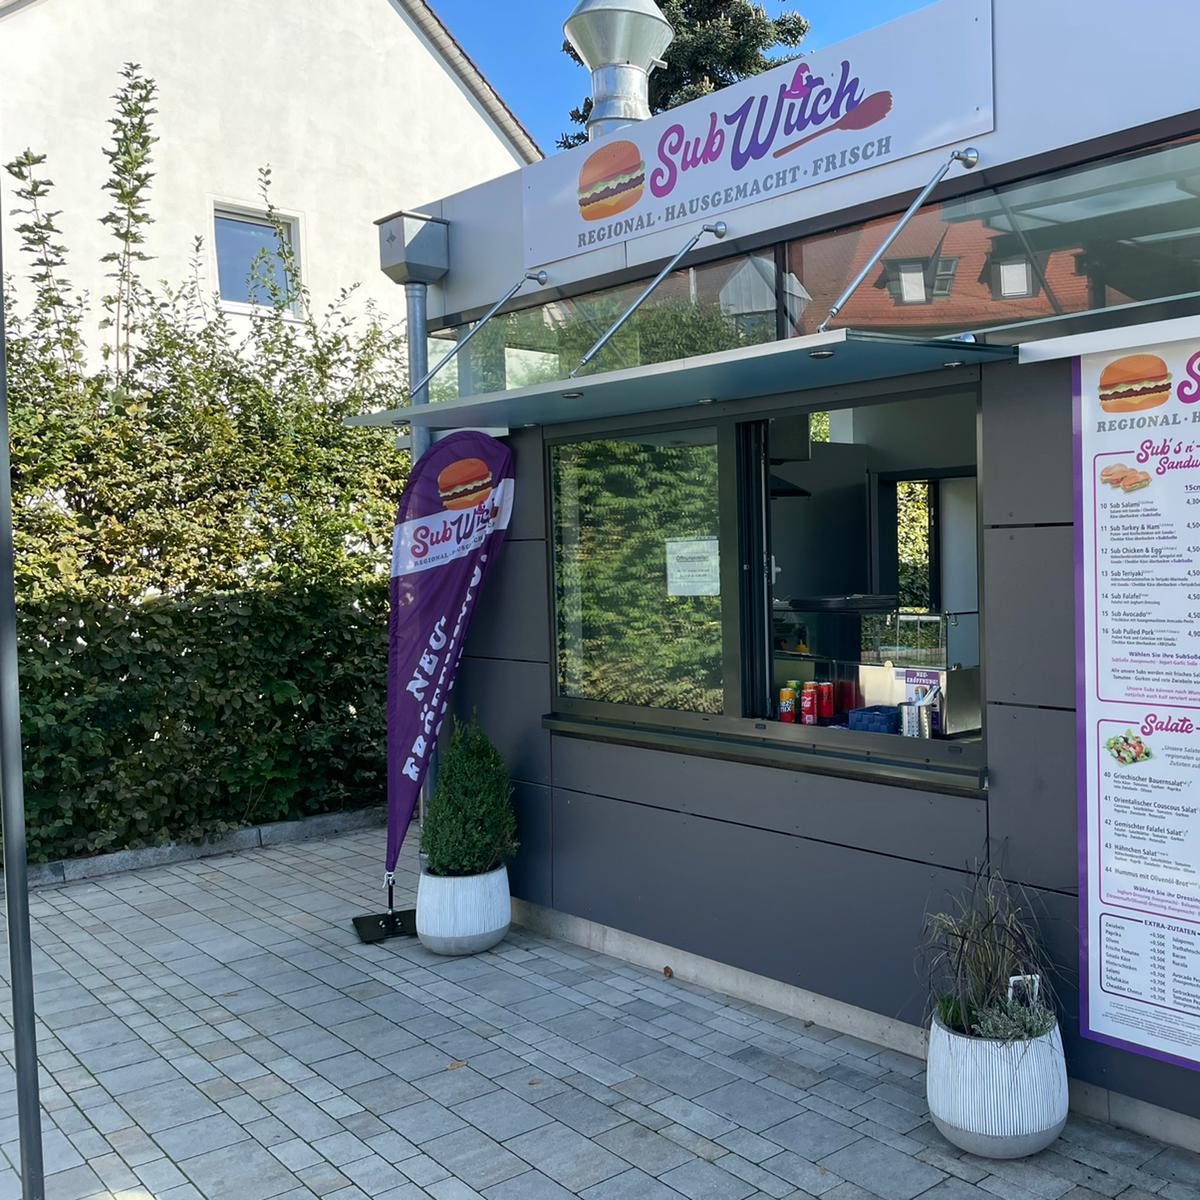 Restaurant "Subwitch" in Herzogenaurach